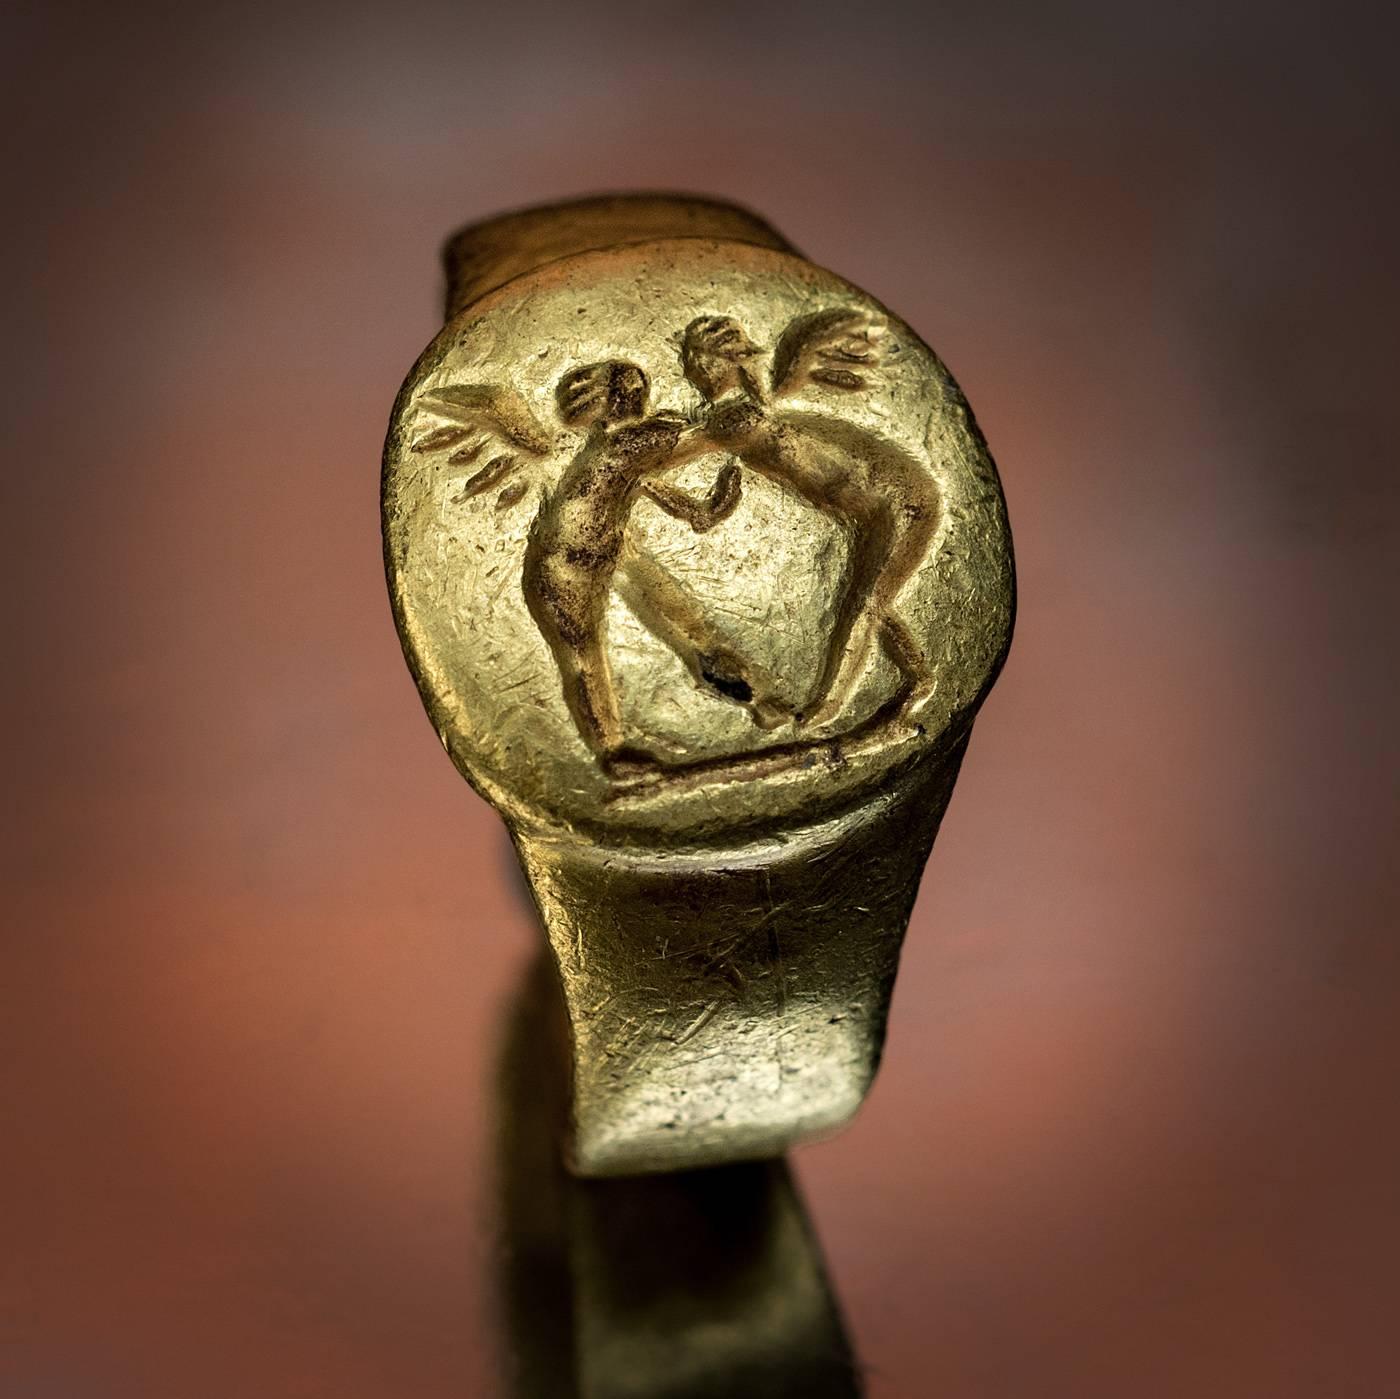 Bague en or de la Grèce antique, unique et de qualité muséale, datant du 4e siècle avant J.-C., probablement une alliance.

L'anneau est gravé de deux Erotes de la lutte. Lorsqu'Aphrodite (déesse grecque de l'amour, de la beauté et du plaisir) est